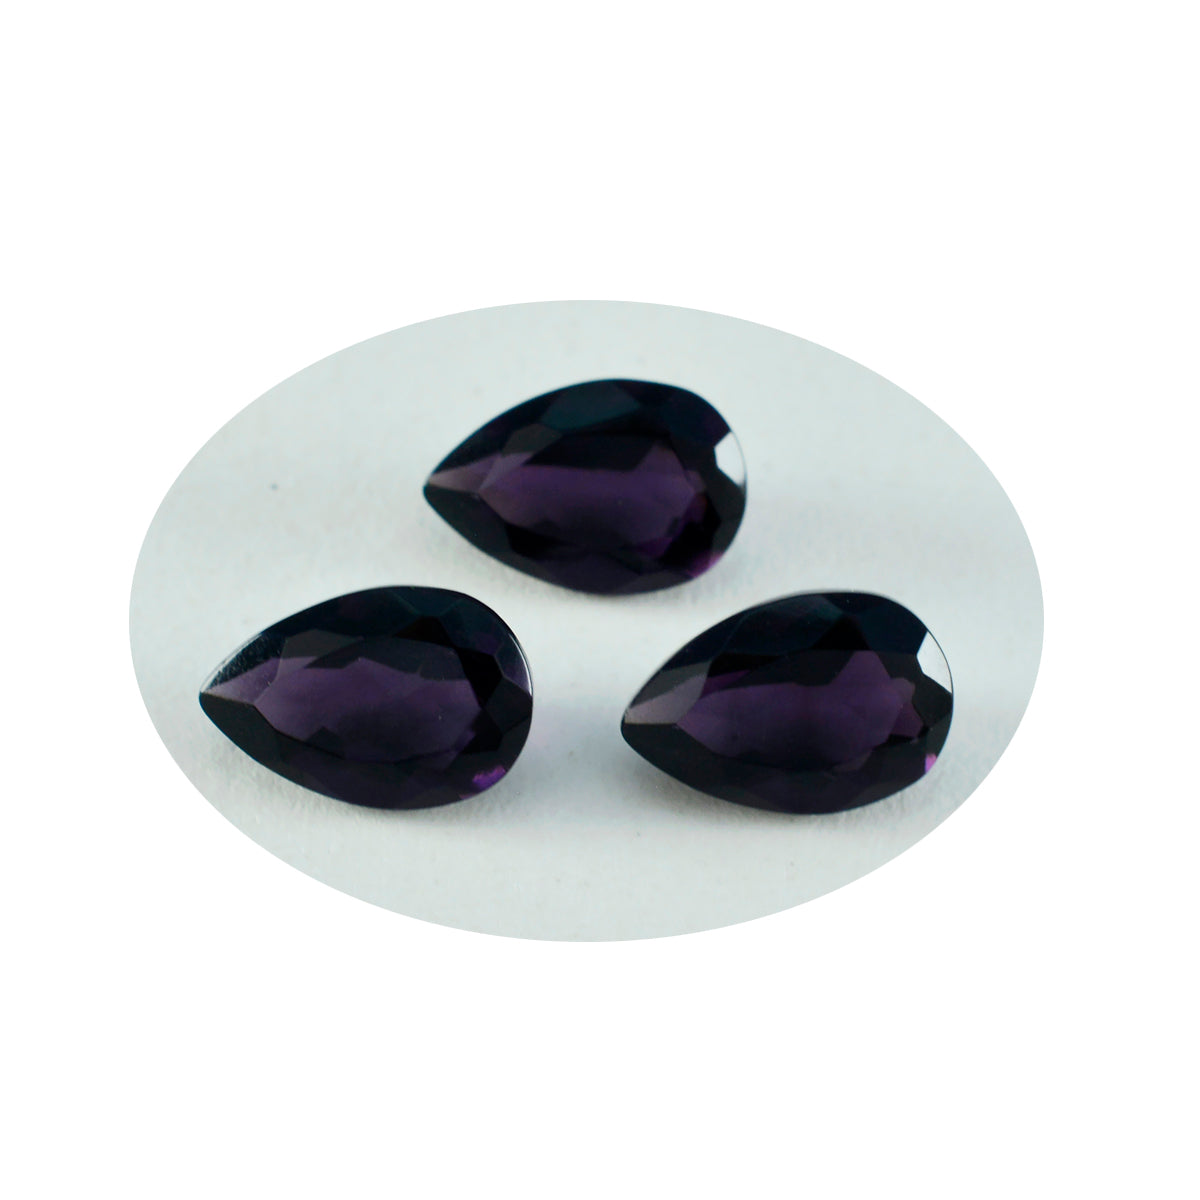 Riyogems 1 pieza de amatista púrpura CZ facetada 8x12 mm forma de pera A+ gemas sueltas de calidad